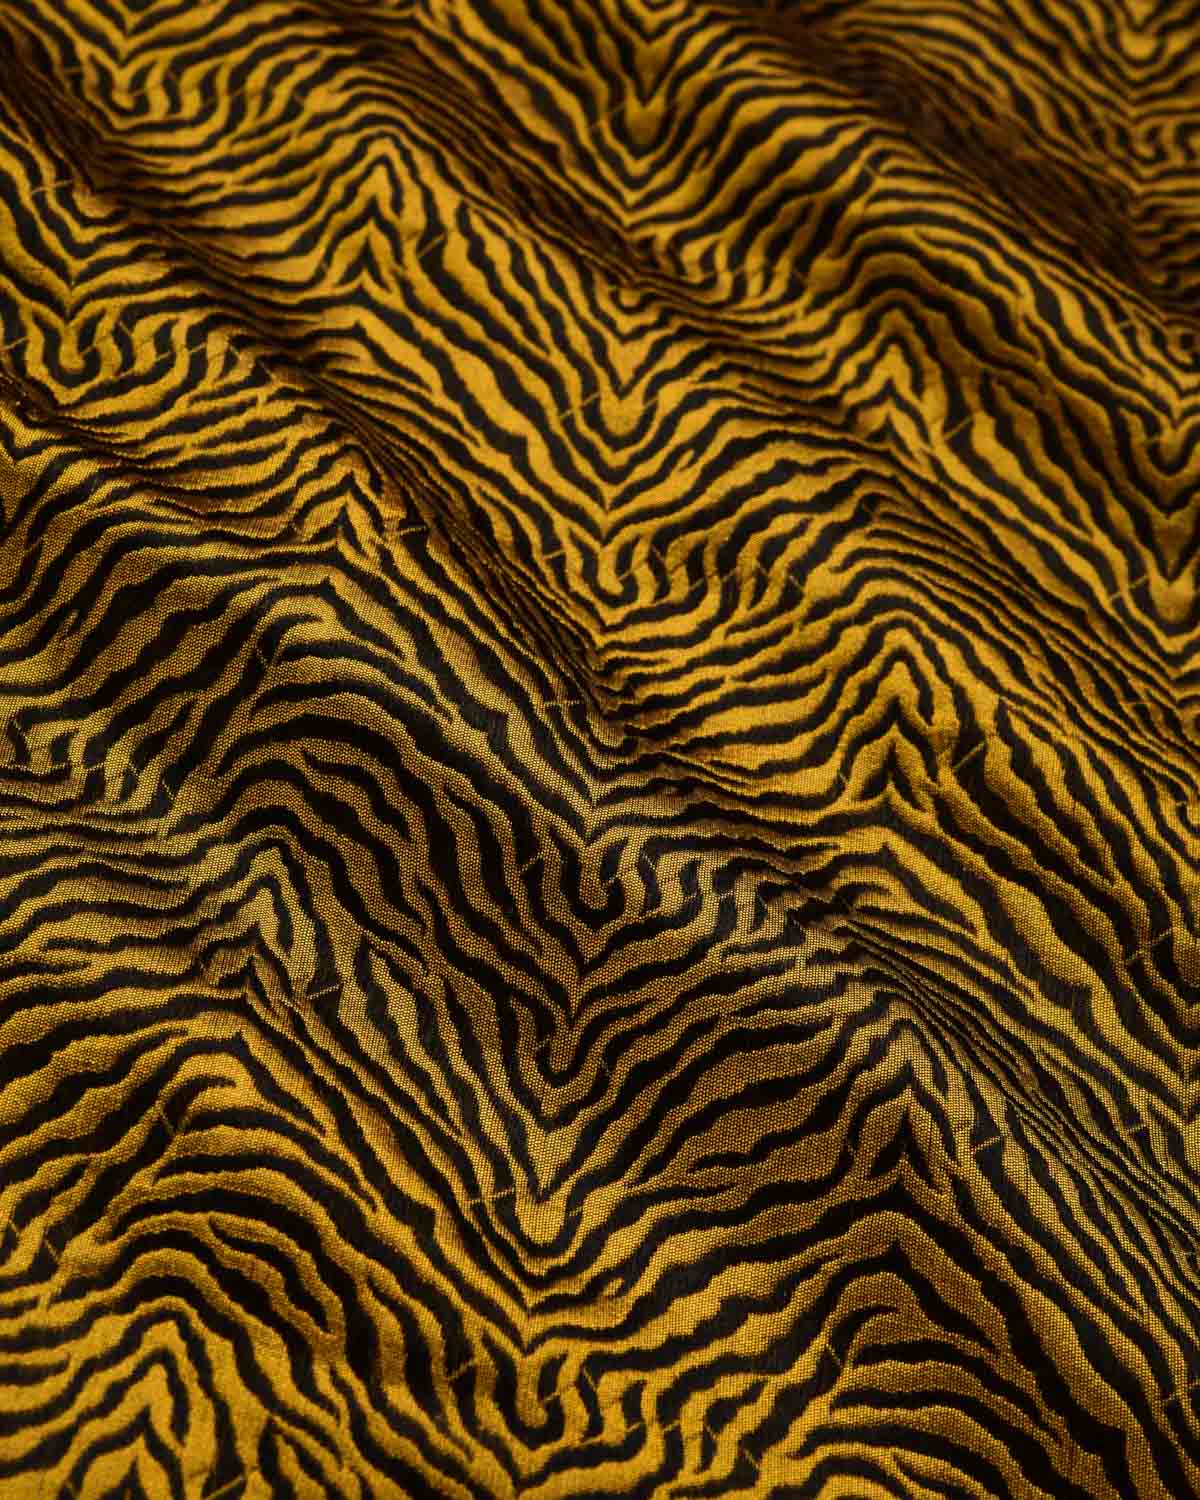 Black & Yellow Banarasi Resham "Tigress" Stripes Brocade Handwoven Katan Silk Scarf 75"x21" - By HolyWeaves, Benares